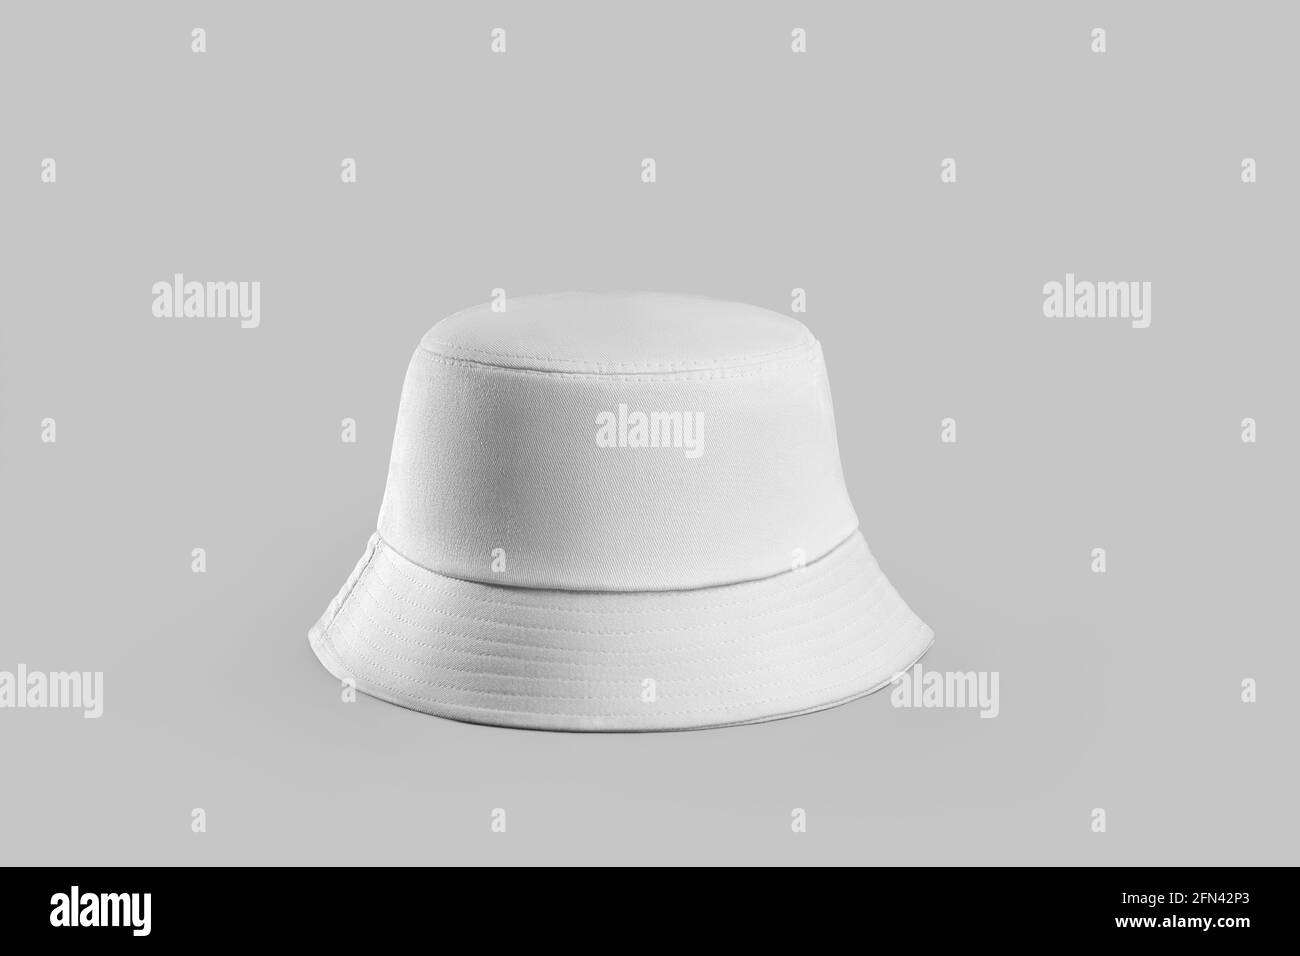 Modell von weiß strukturiertem panama für Sonnenschutz, Hut isoliert auf  Hintergrund. Stylische Kopfbedeckung für den Lifestyle. Damen, Herrenmütze  mit PLA Stockfotografie - Alamy